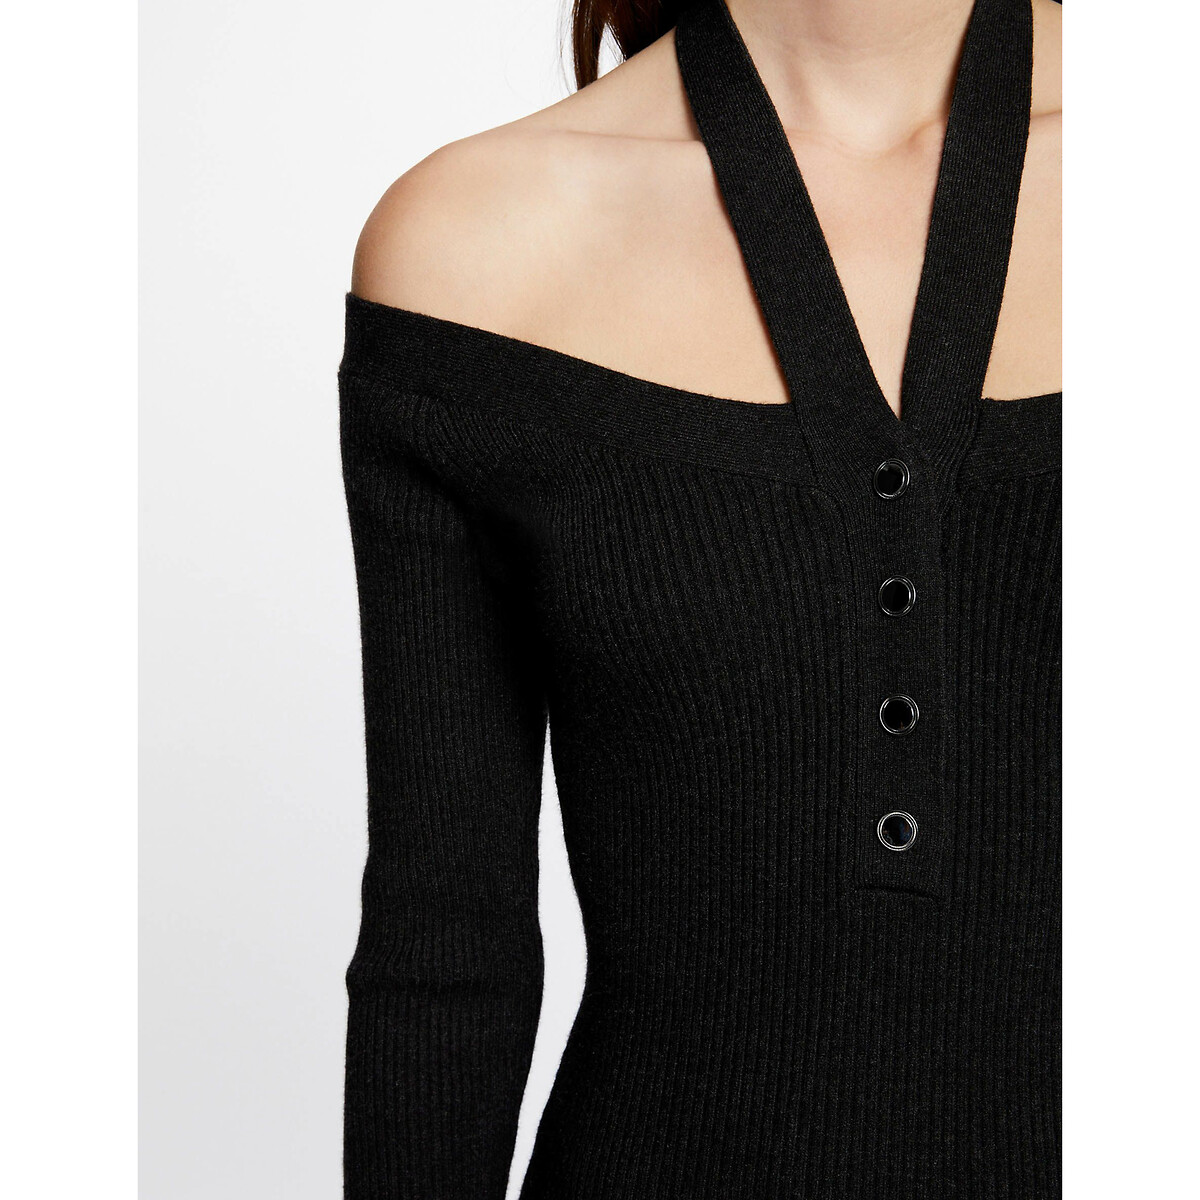 Платье-пуловер приталенное длинные рукава  XS серый LaRedoute, размер XS - фото 3